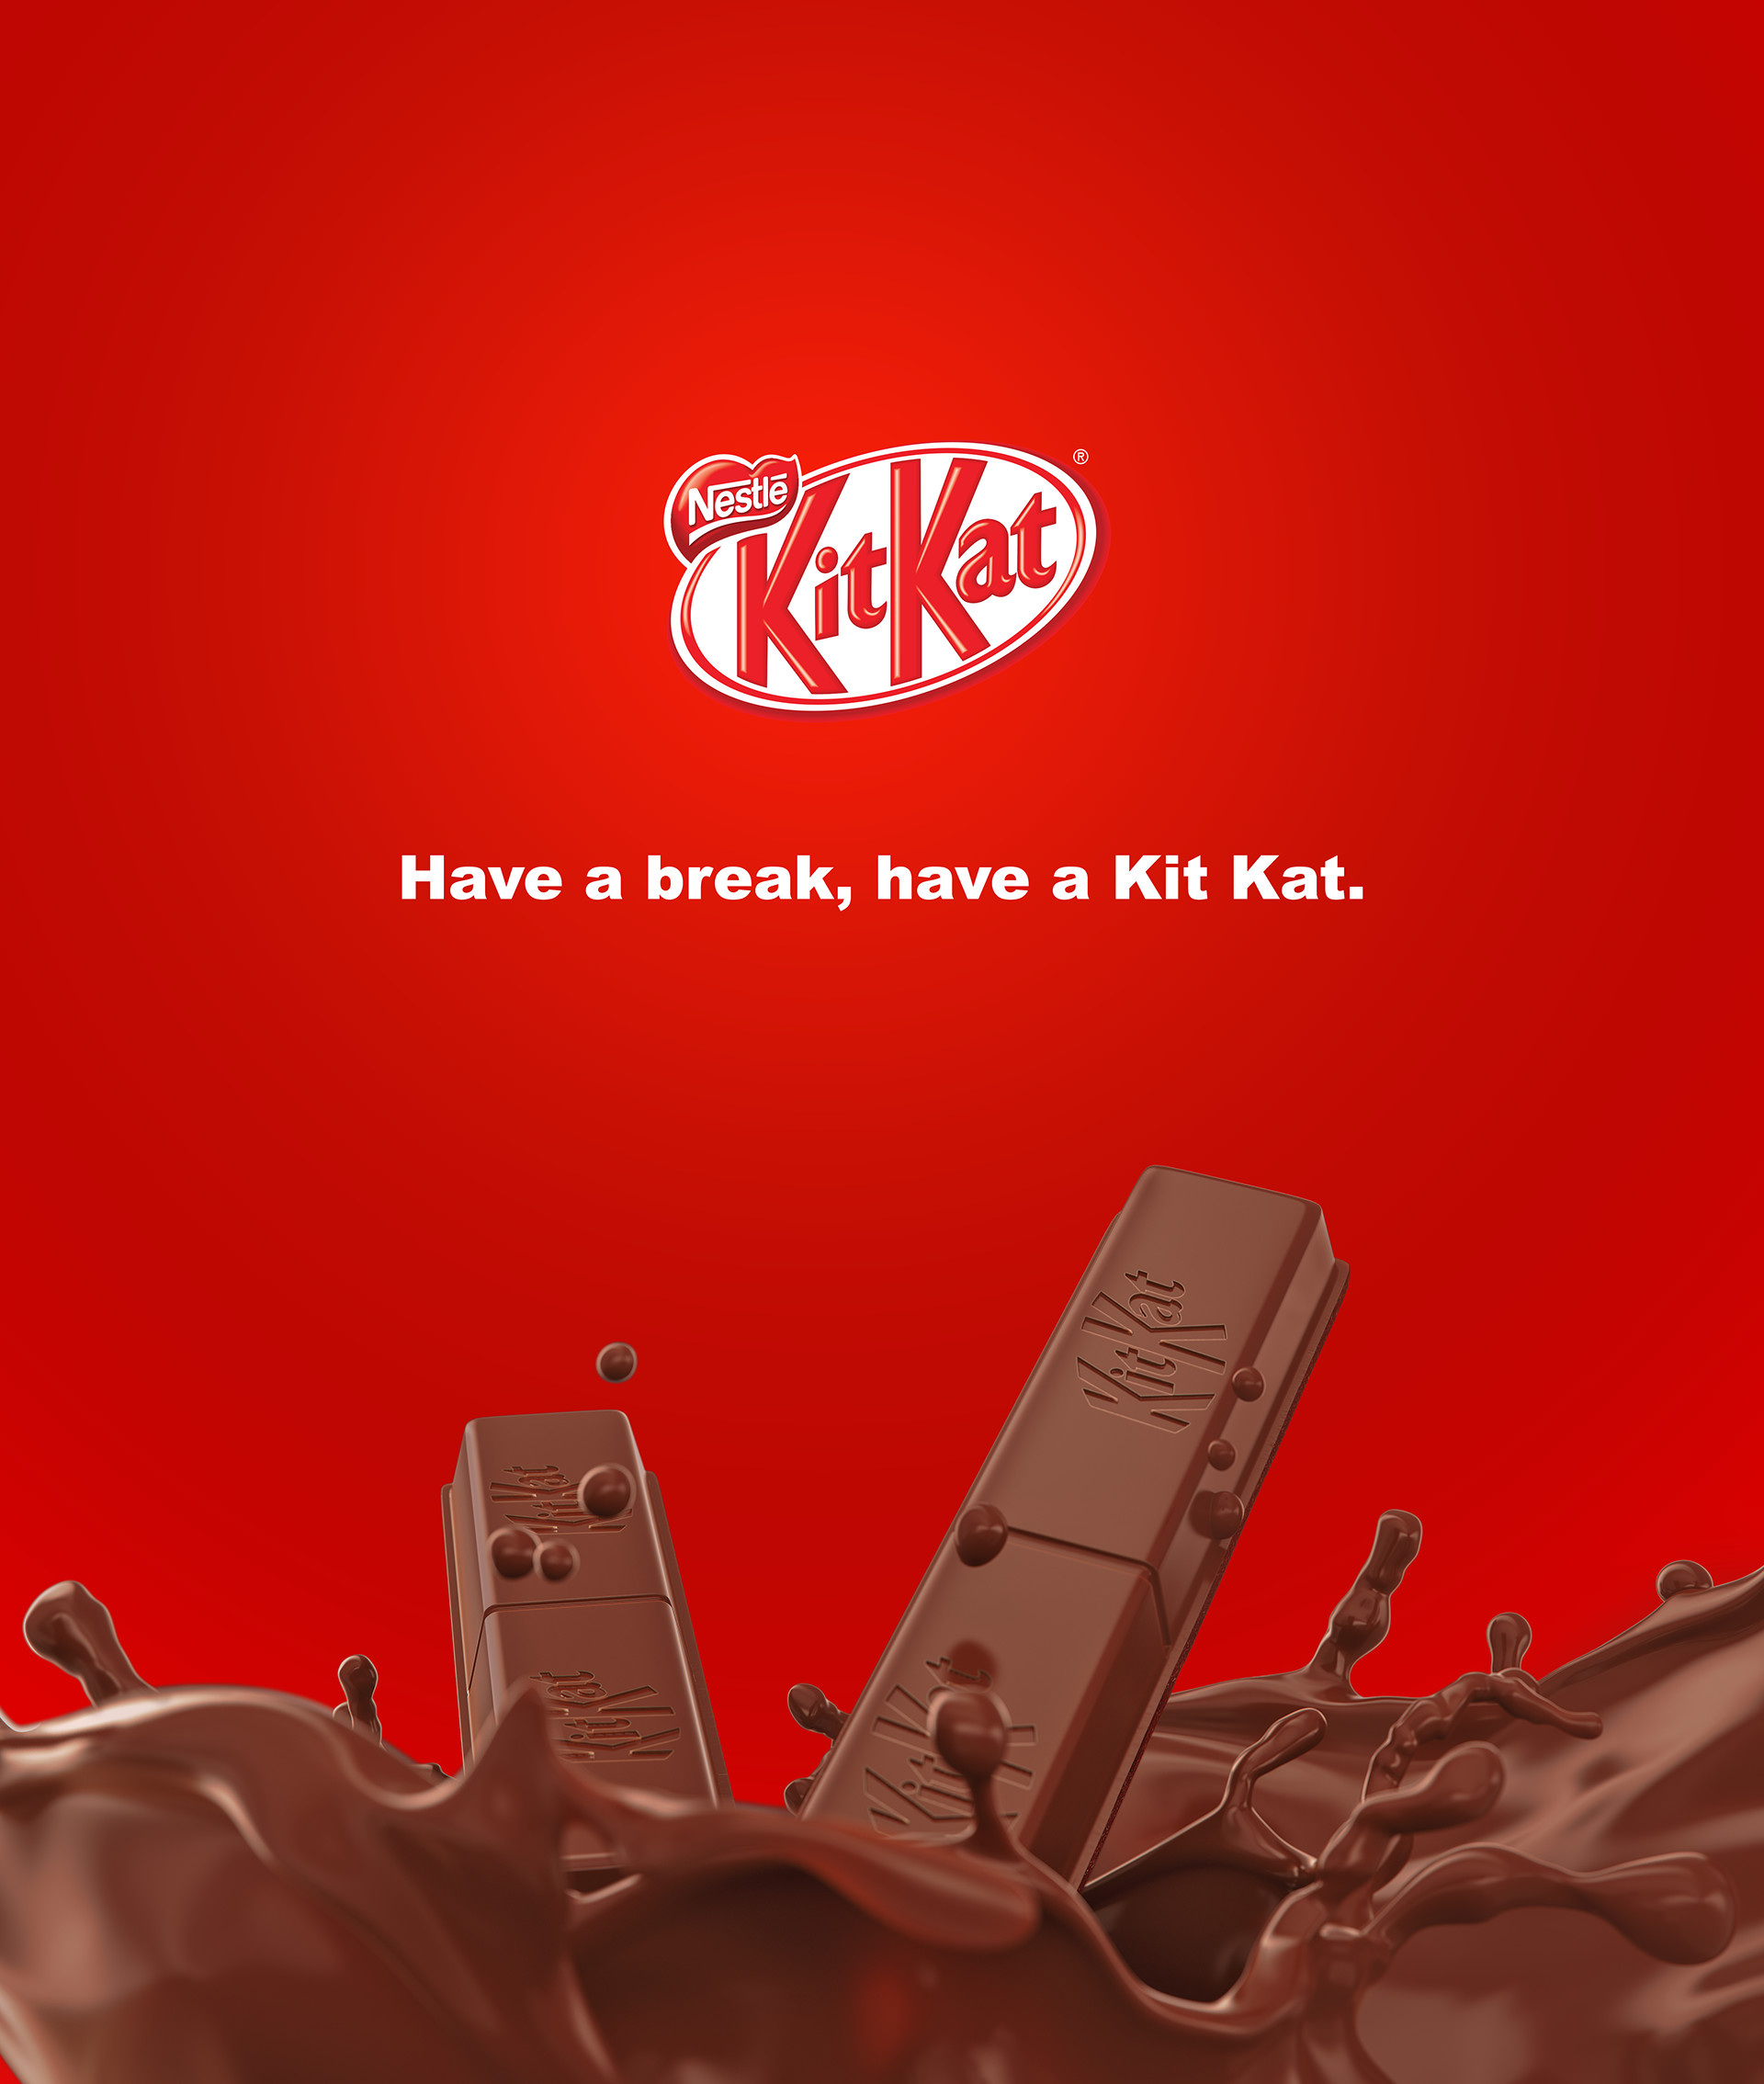 Rodrigo Raiol - Have a break, have a Kit Kat - CGI